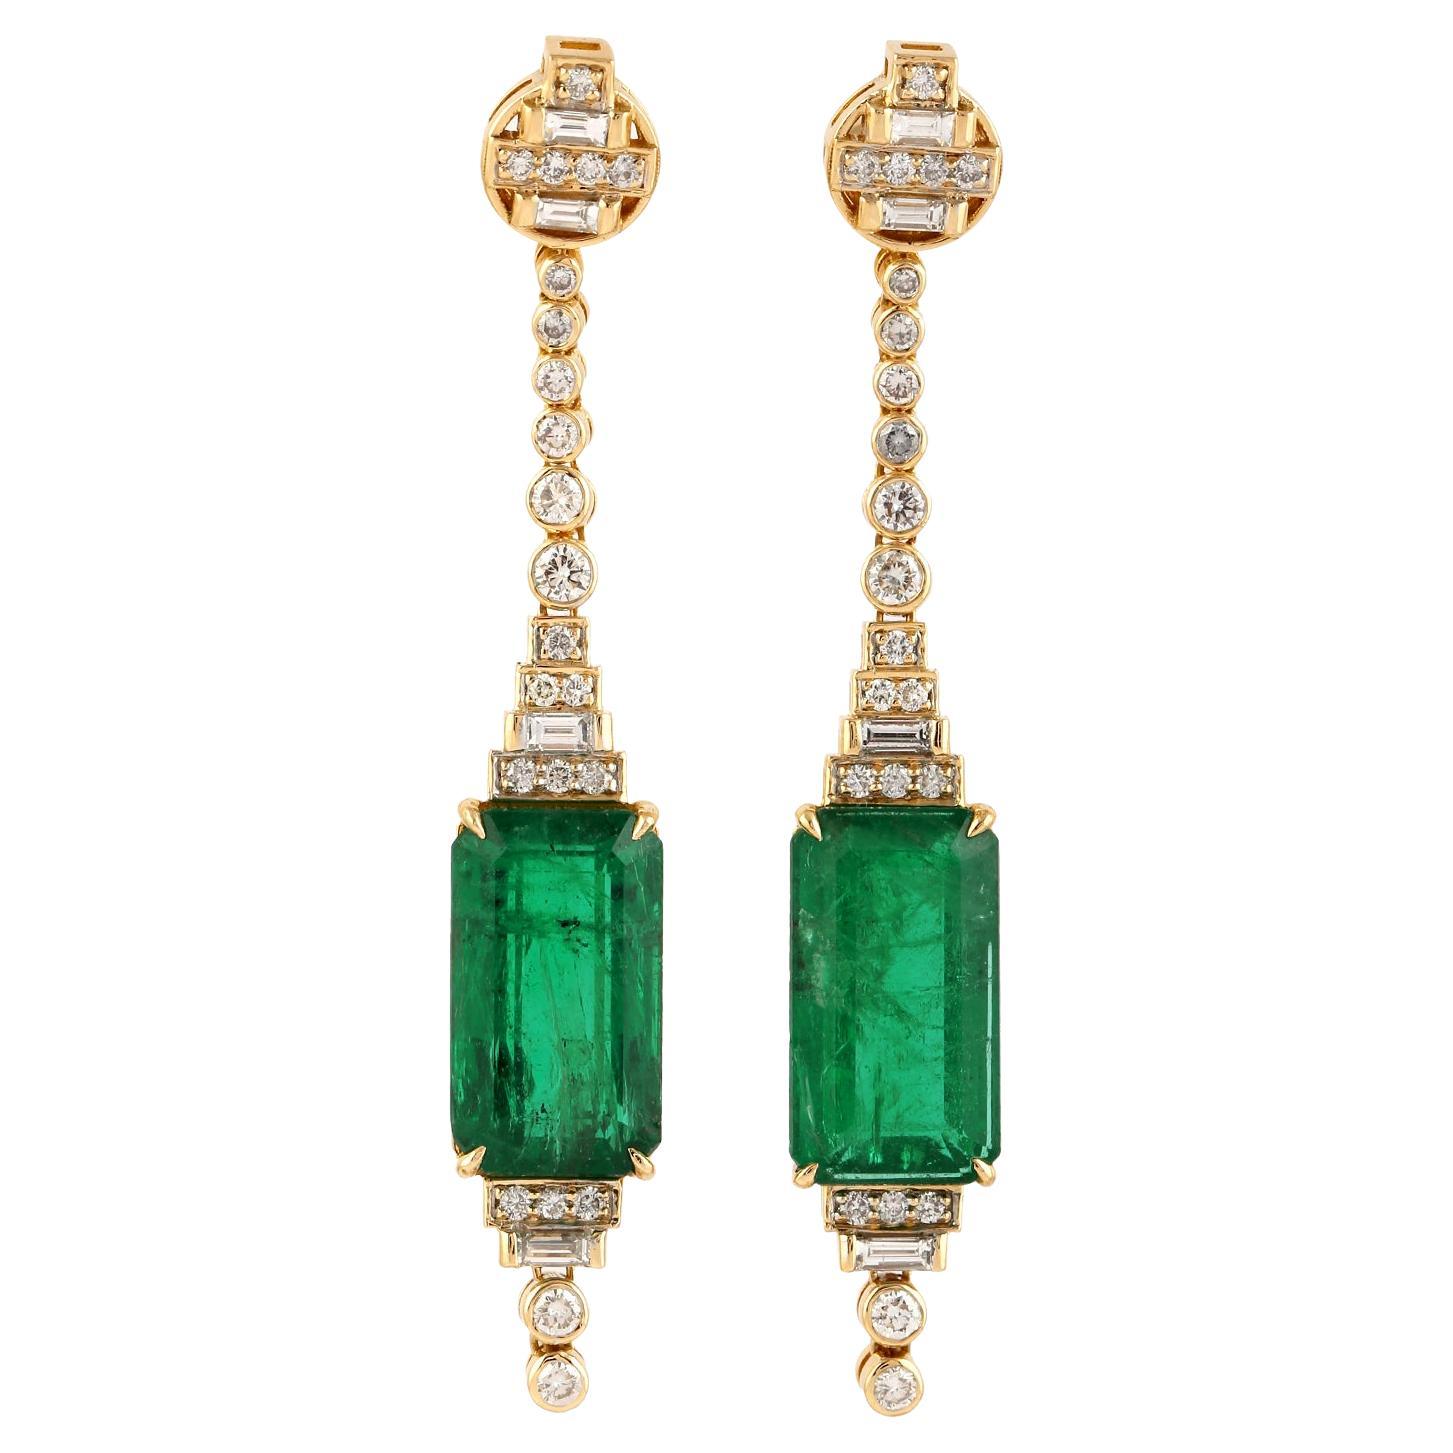 15 Cts. Long Zambian Emerald Octogen Pair Earrings in 18k Yellow Gold